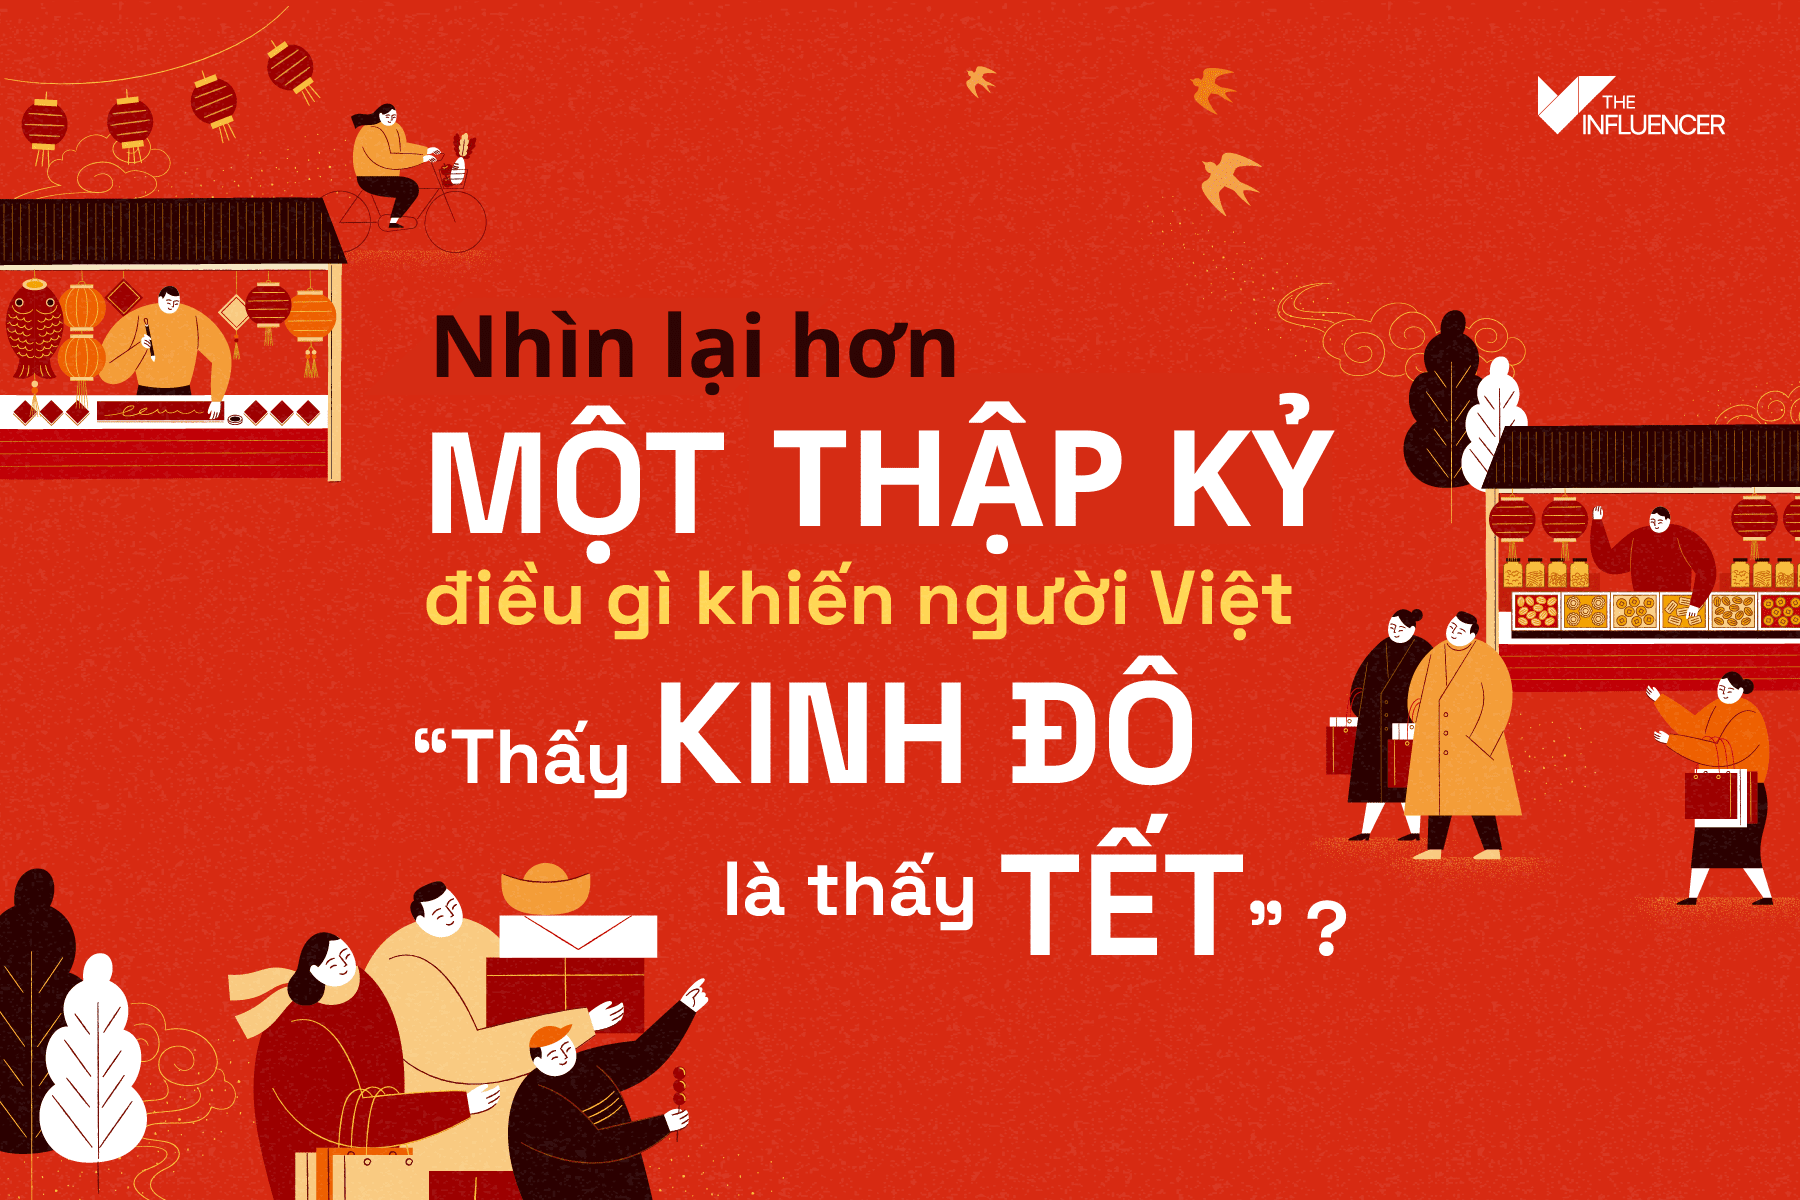 Nhìn lại hơn một thập kỷ, điều gì khiến người Việt "Thấy Kinh Đô là thấy Tết"?